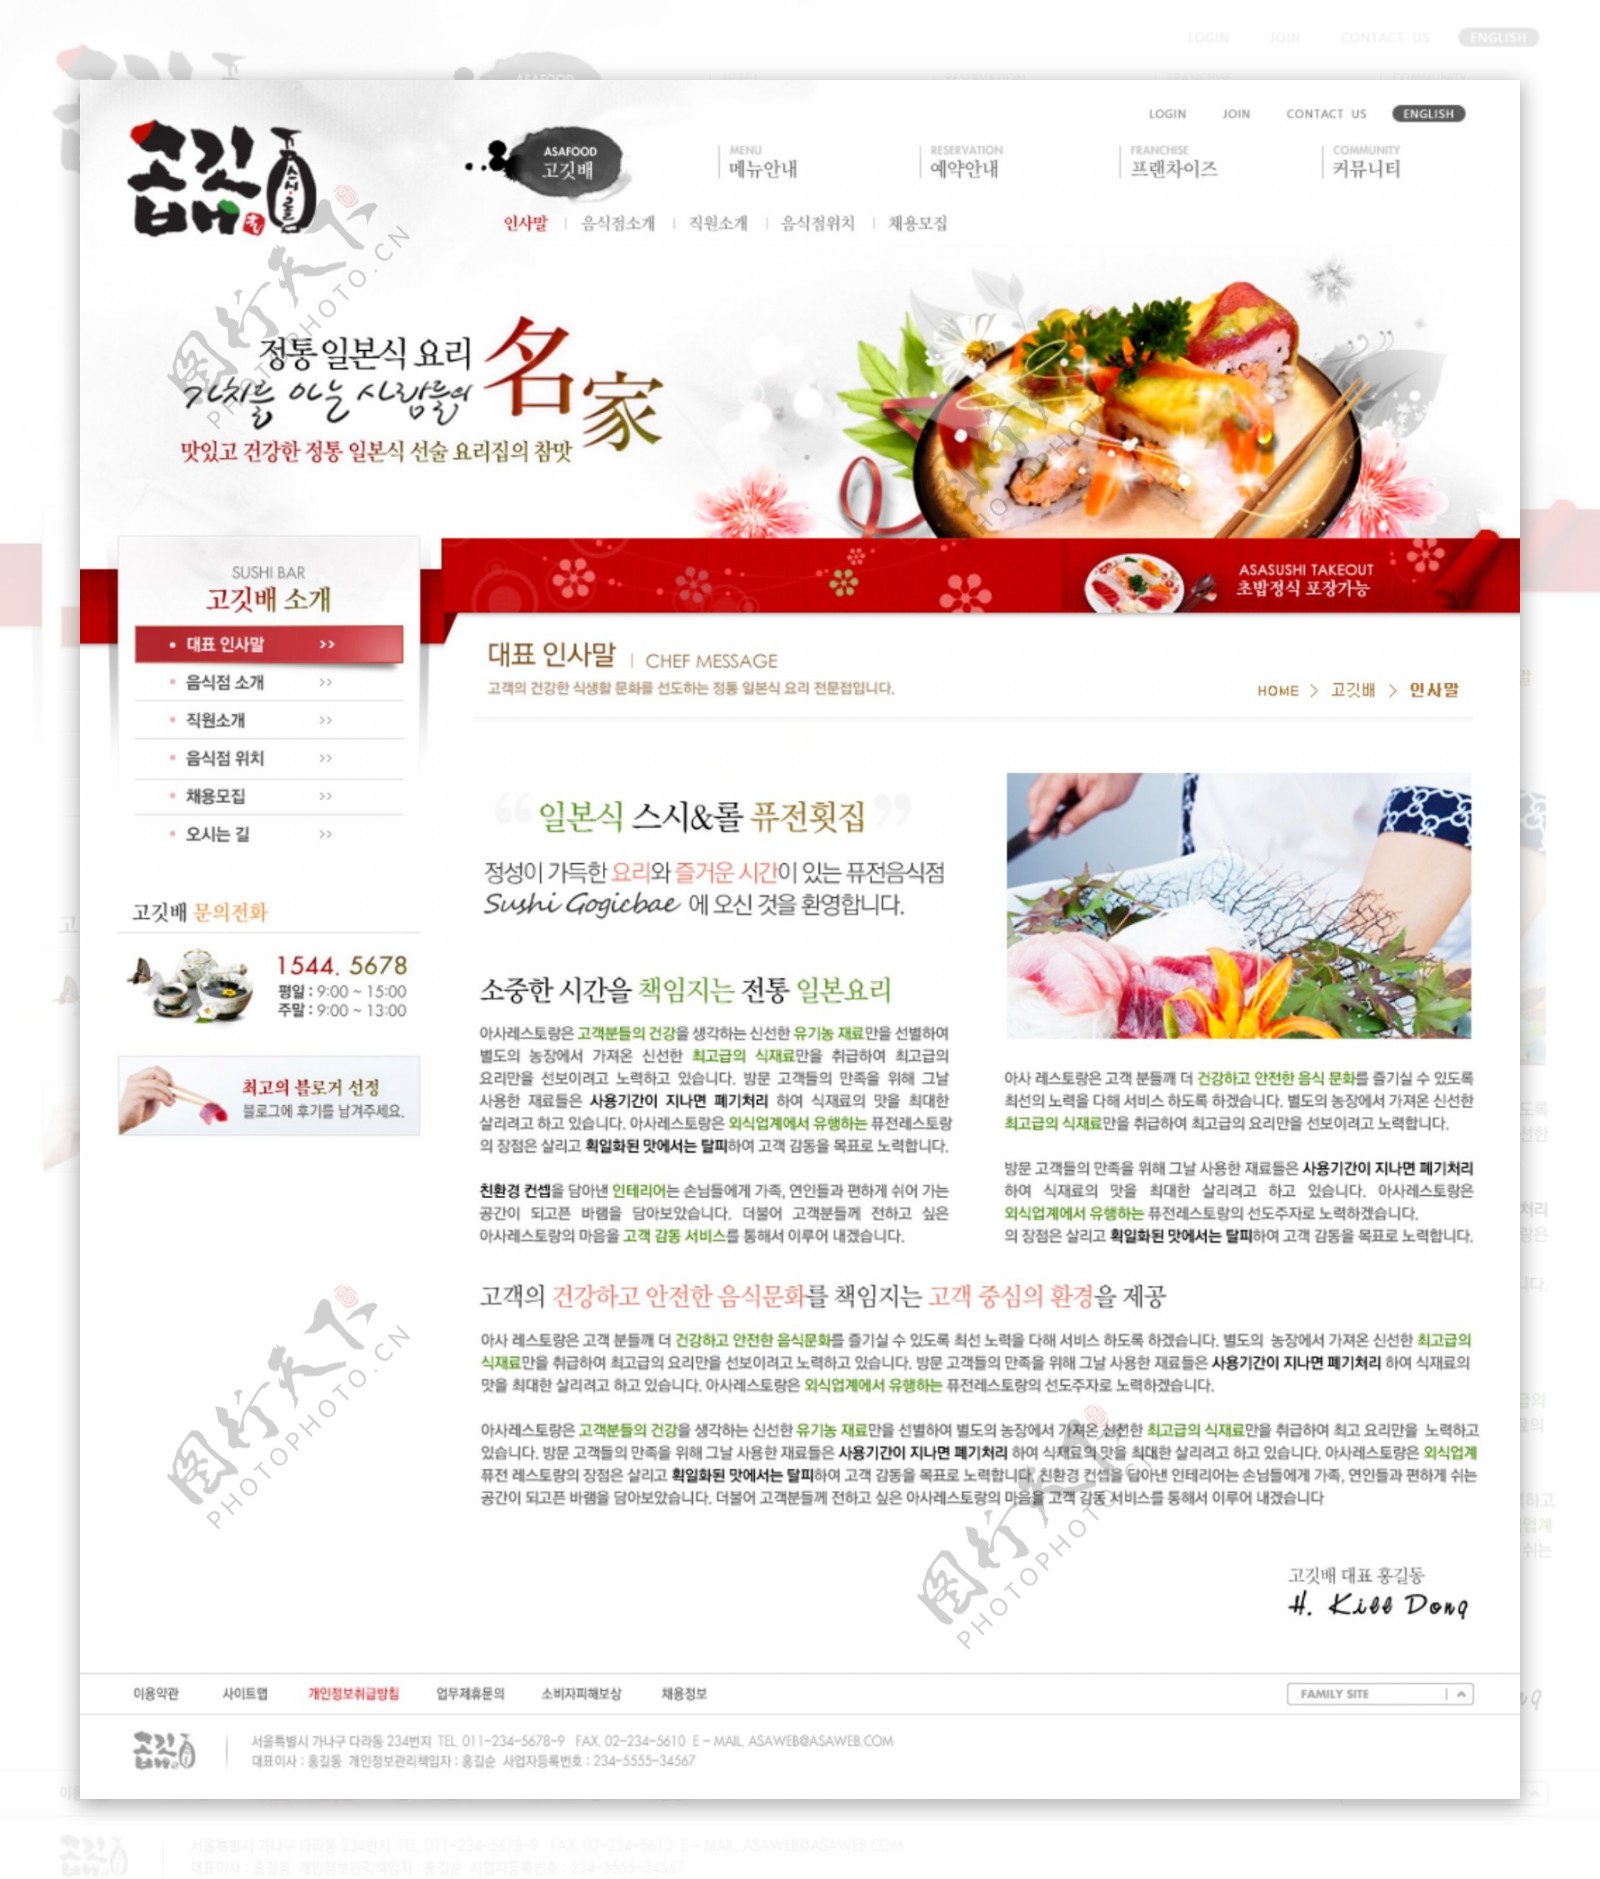 餐厅饭店菜品网页设计图片